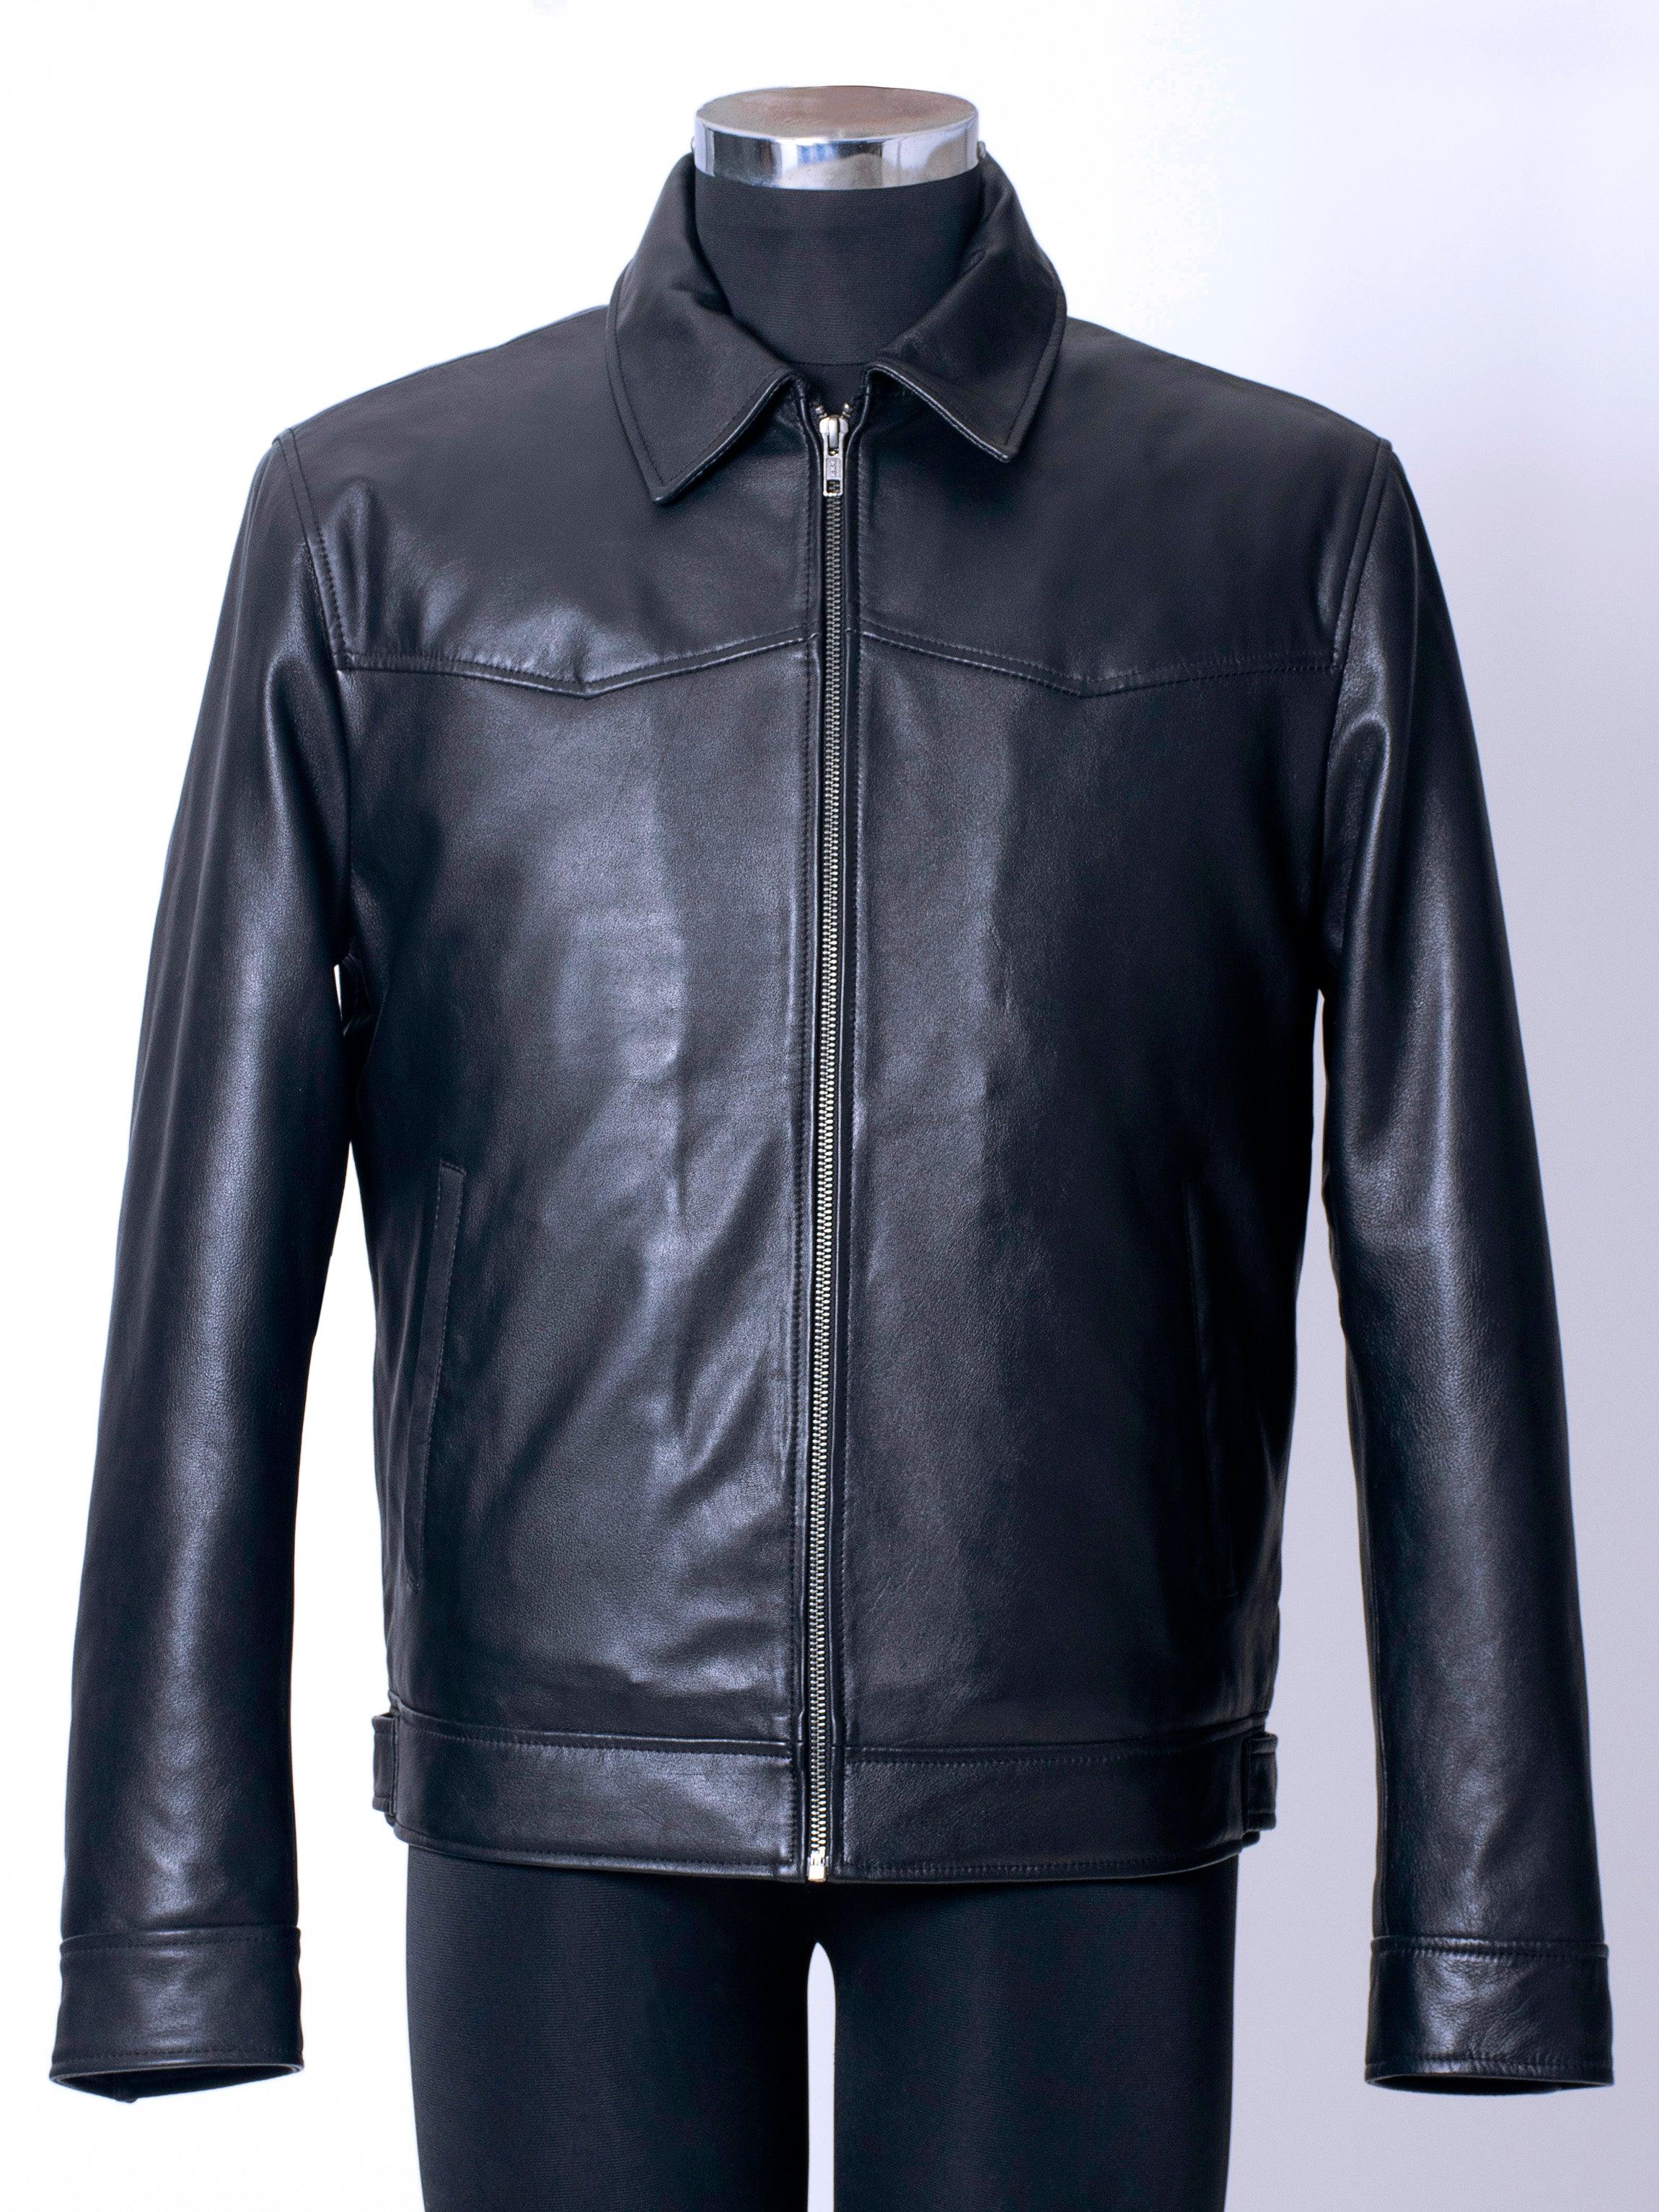 Short Leather Jacket - Celebrity Bomber Jackets - Cow Hide Crafts